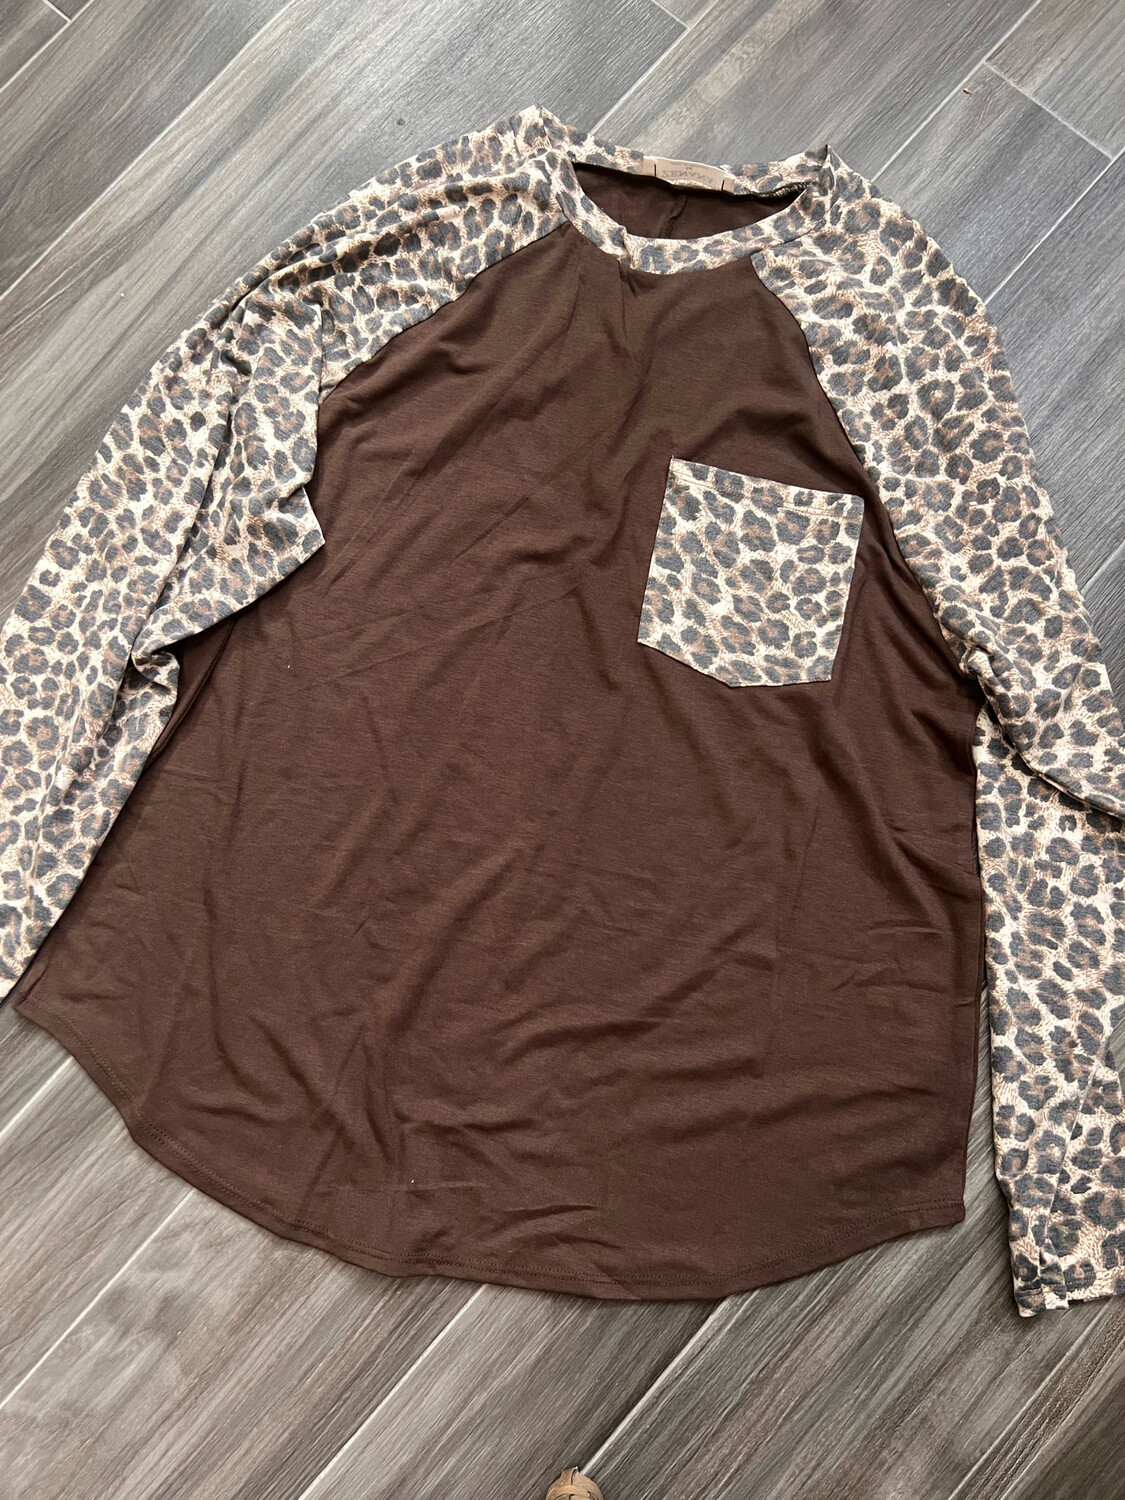 Long Sleeve Cheetah Top Size Medium